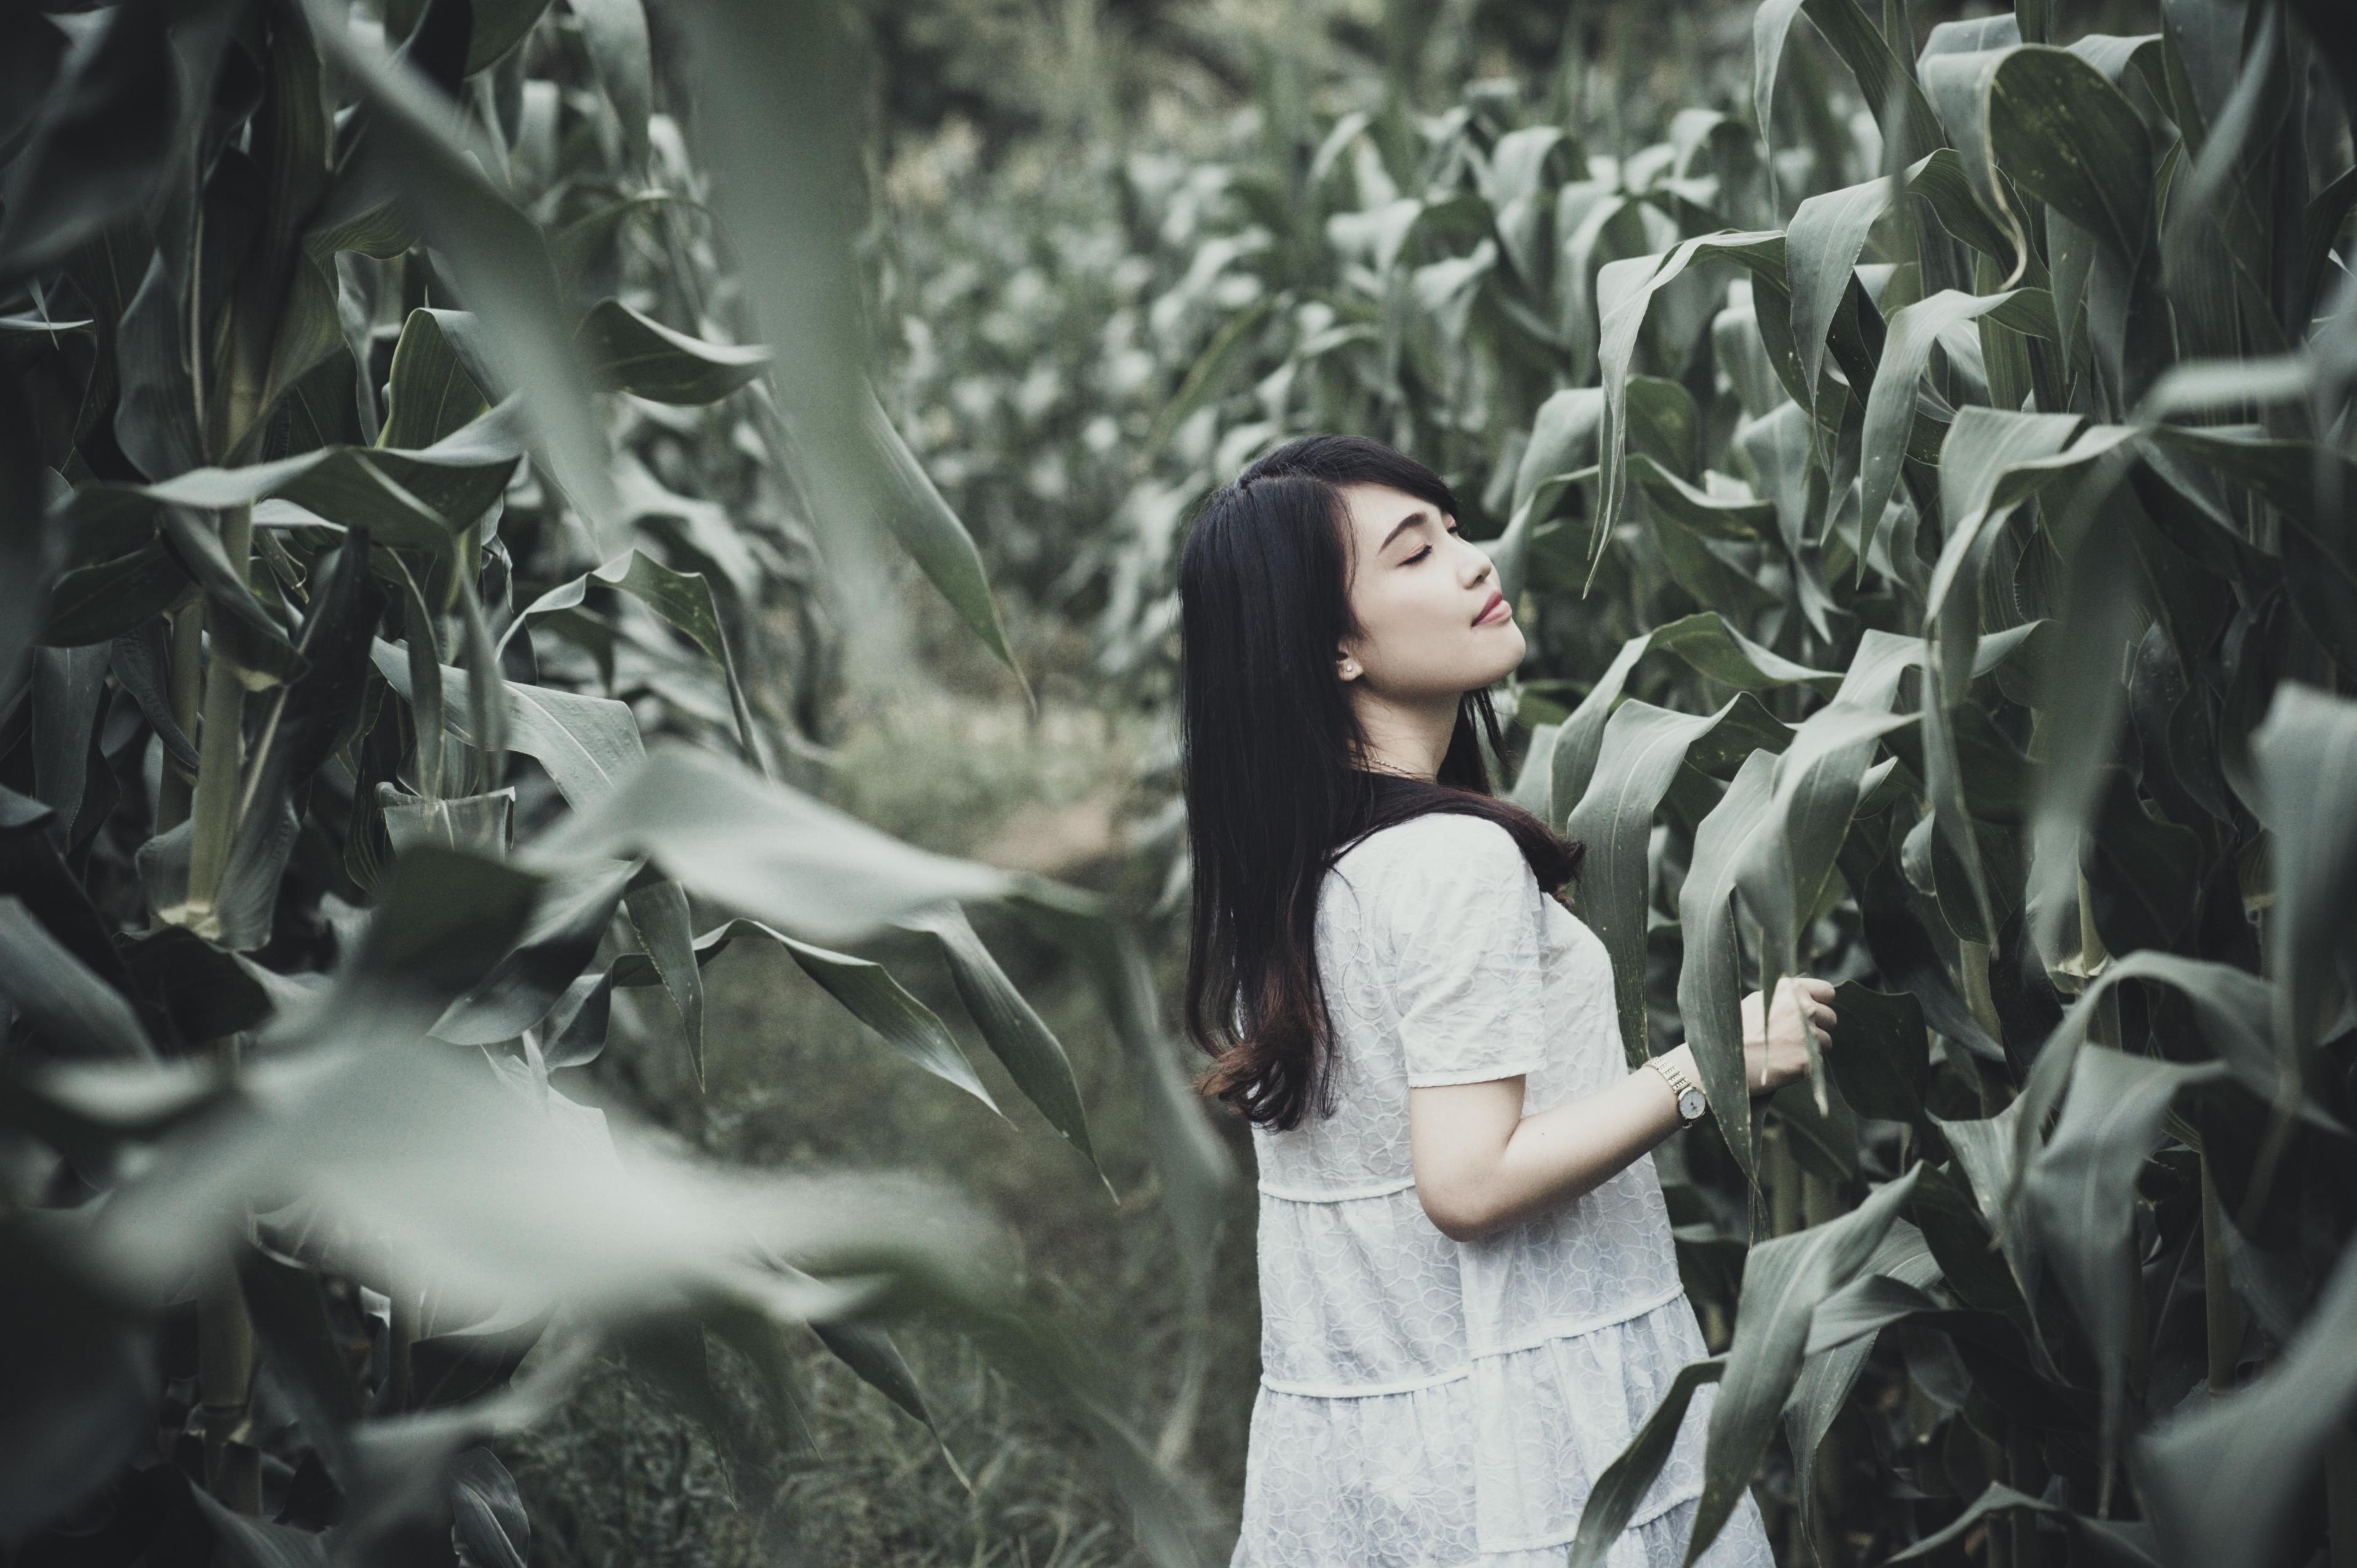 Free picture: woman, field, corn, people, girl, portrait 